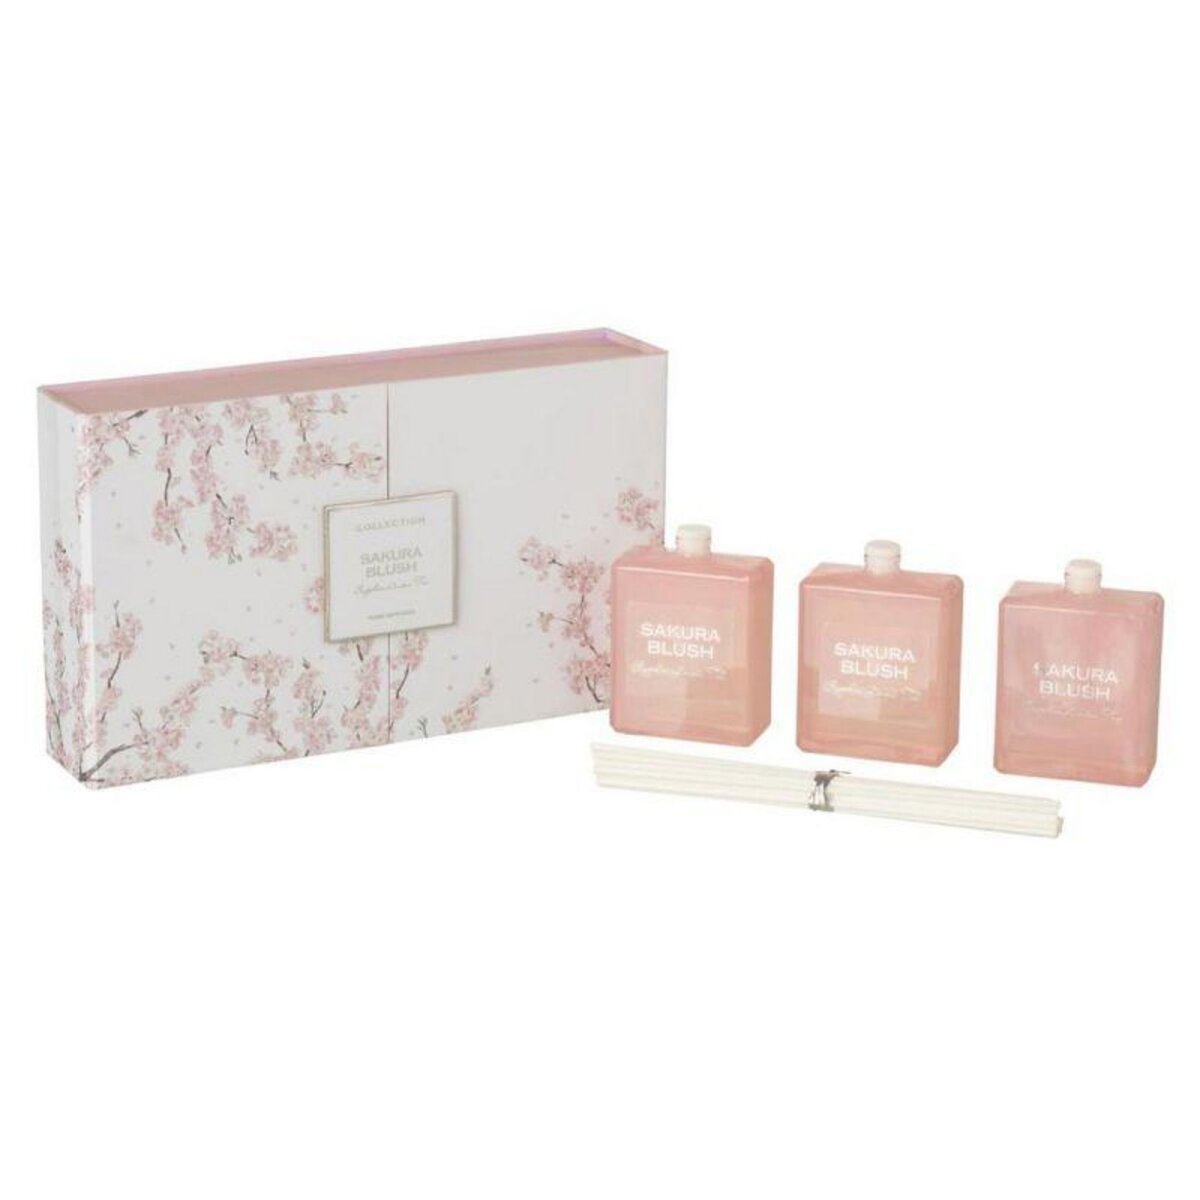 Paris Prix Lot de 3 Huiles Parfumées  Sakura Blush  22cm Rose